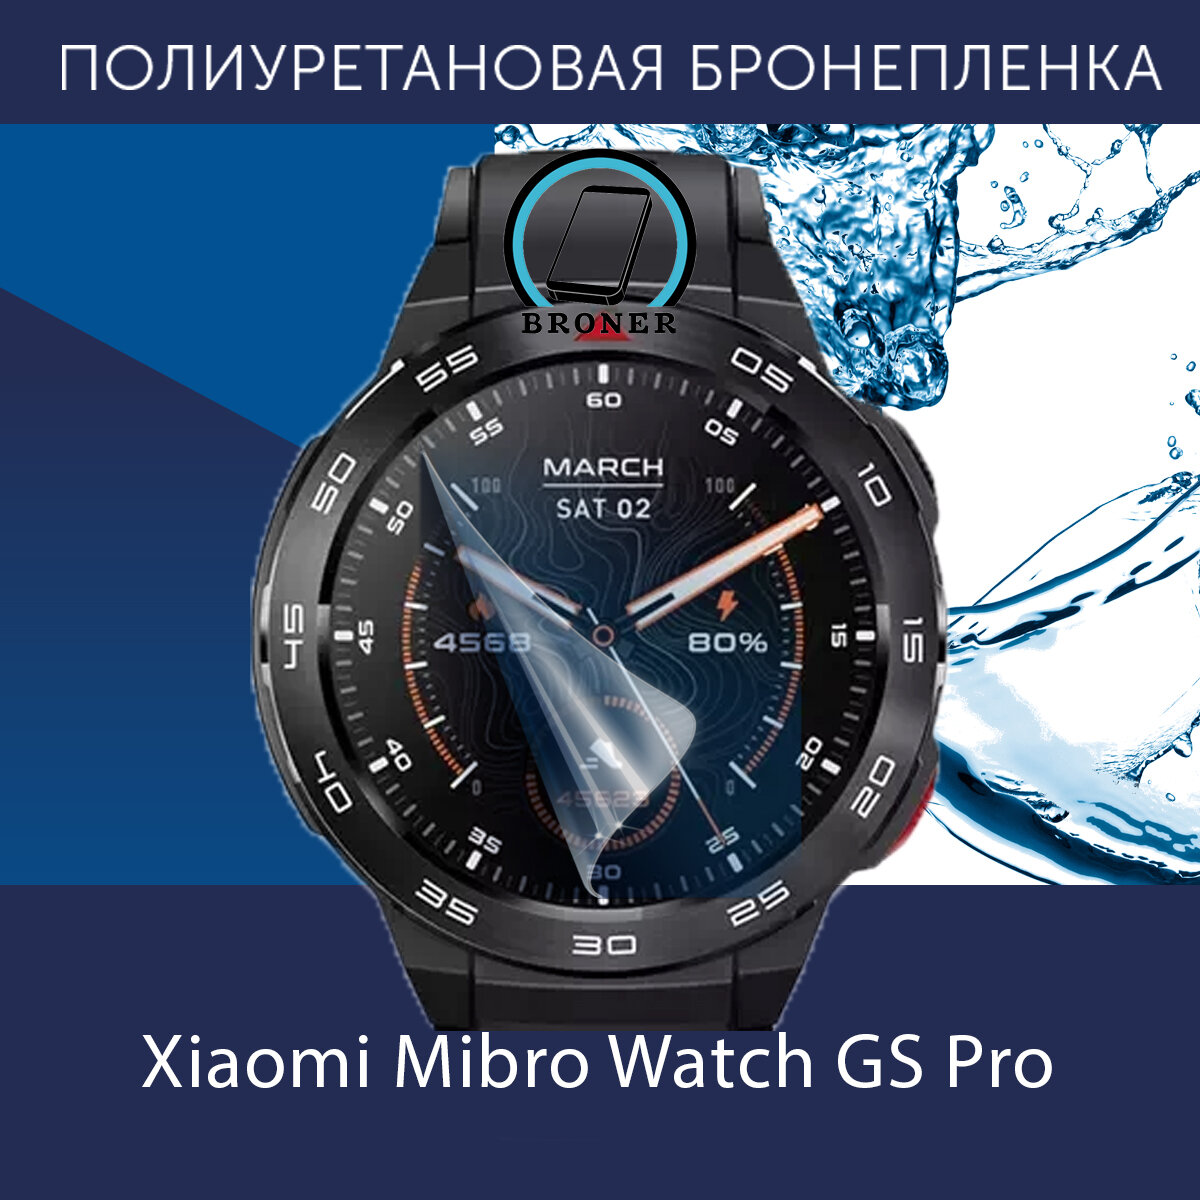 Полиуретановая бронепленка для смарт-часов Xiaomi Mibro Watch GS Pro / Защитная пленка до безеля / Глянцевая